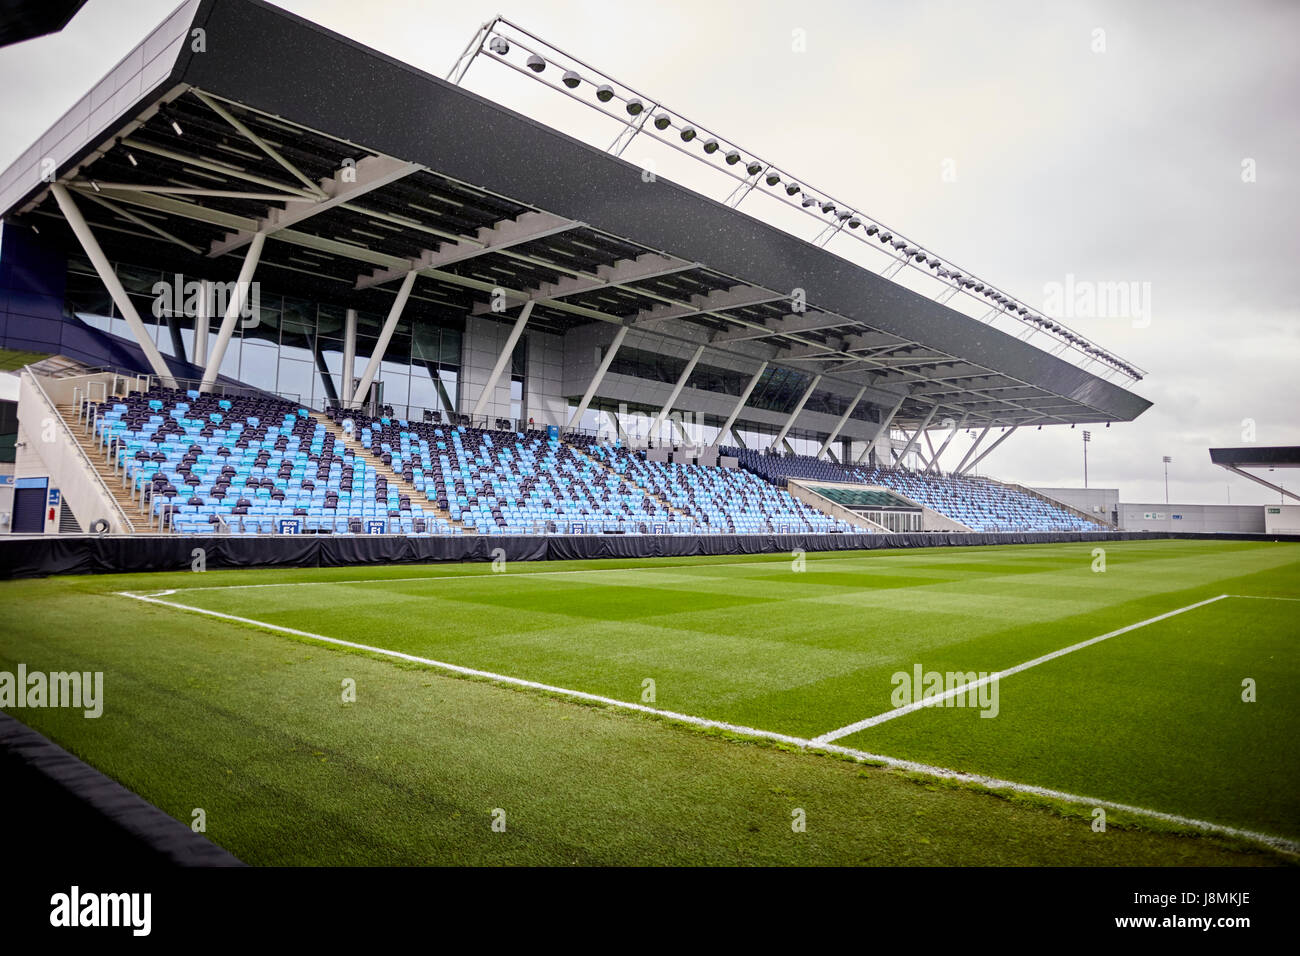 Manchester City Etihad Stadium Akademie Stadion beitragen, die gemischte Farbtöne der blauen Sitze im leere Stadion beschäftigt auszusehen, Stockfoto